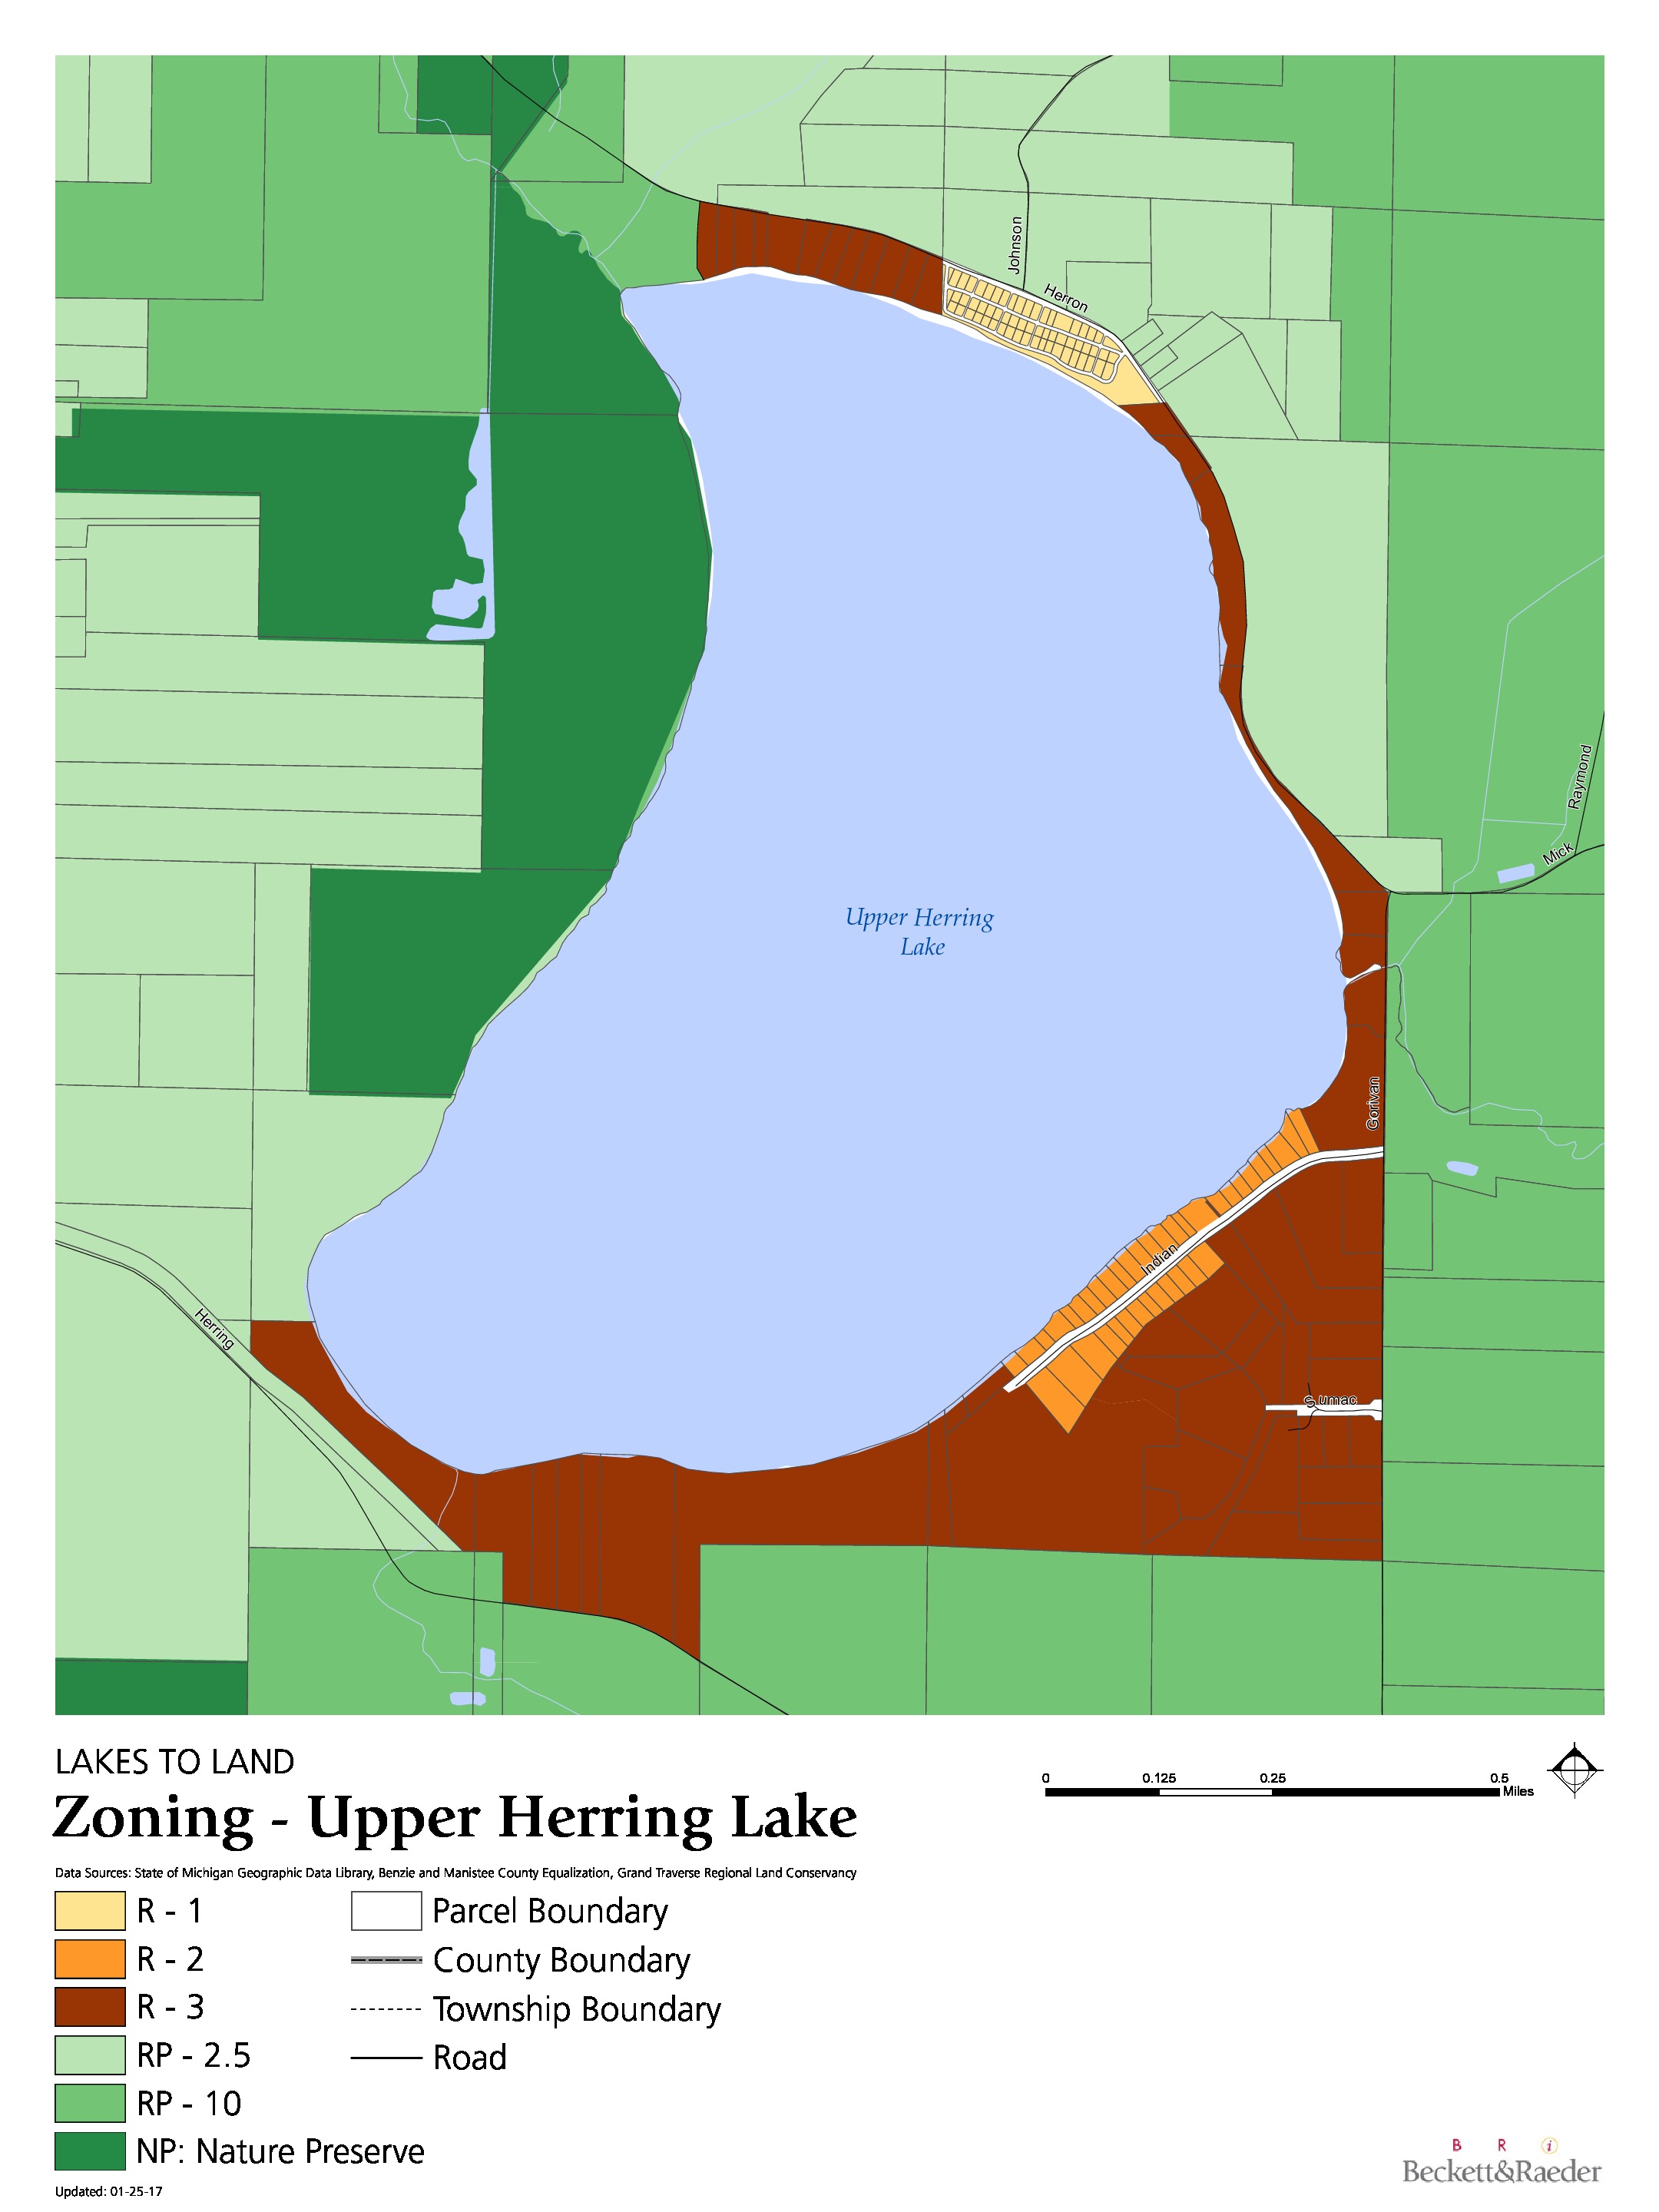 Zoning - Upper Herring Lake